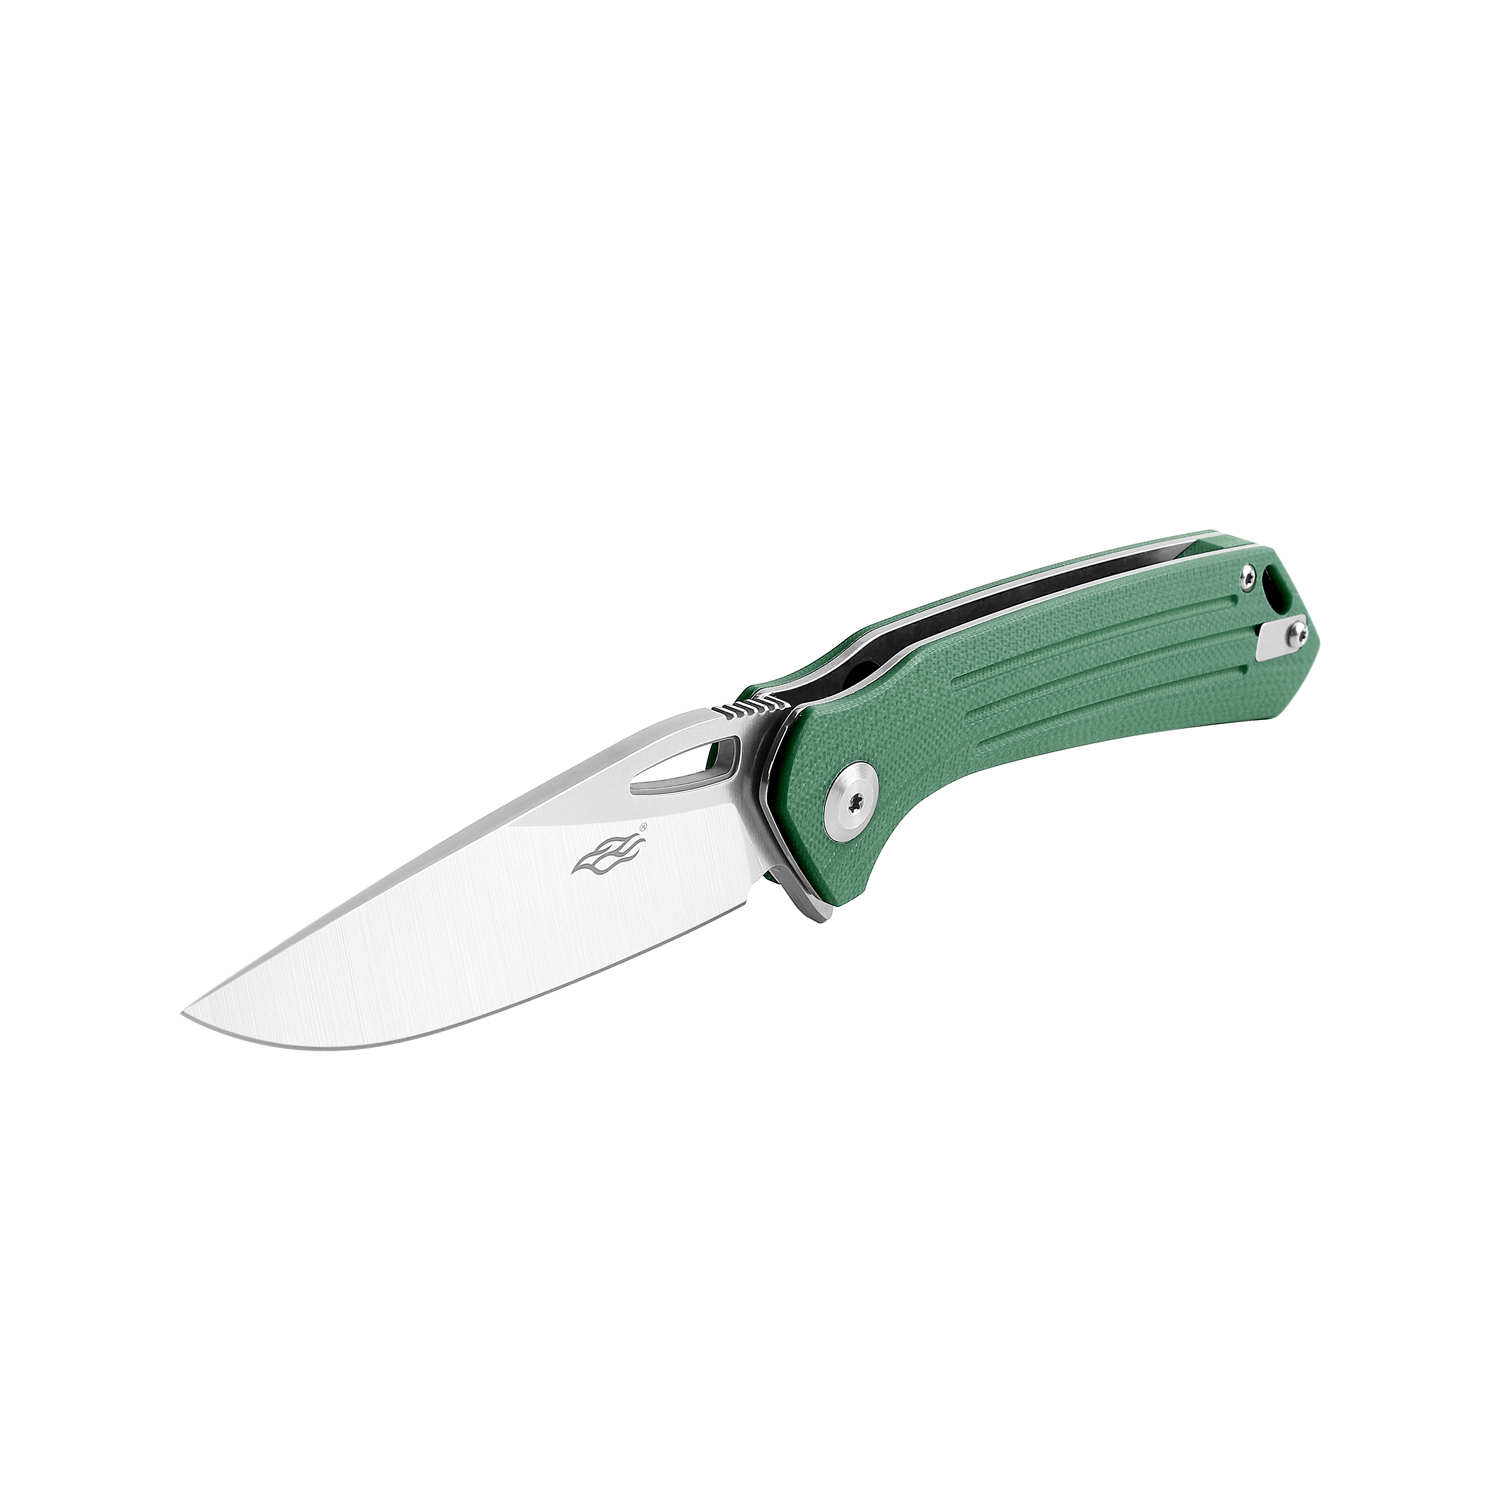 Складной нож Firebird FH921-GB, сталь D2, рукоять G10 зеленая - фото 4